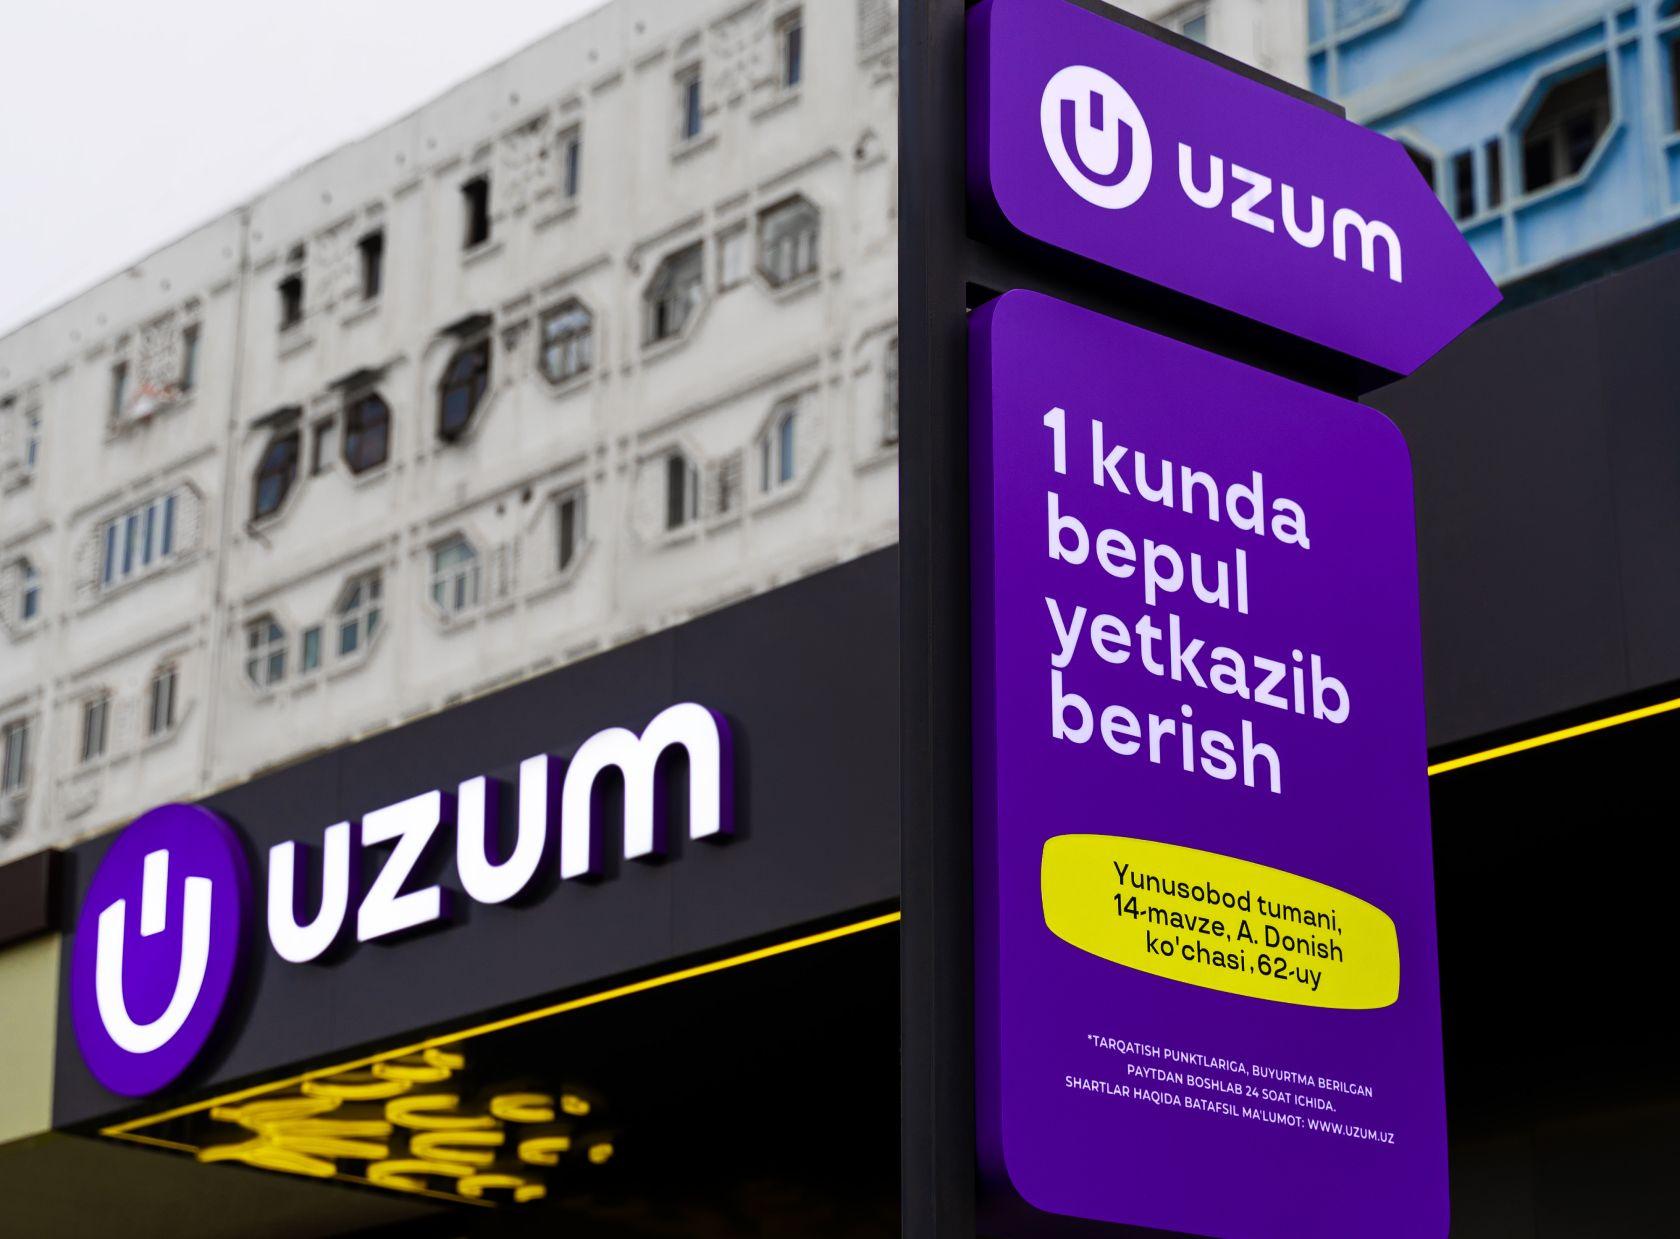 Uzum стал первым «единорогом» в Узбекистане - Forbes